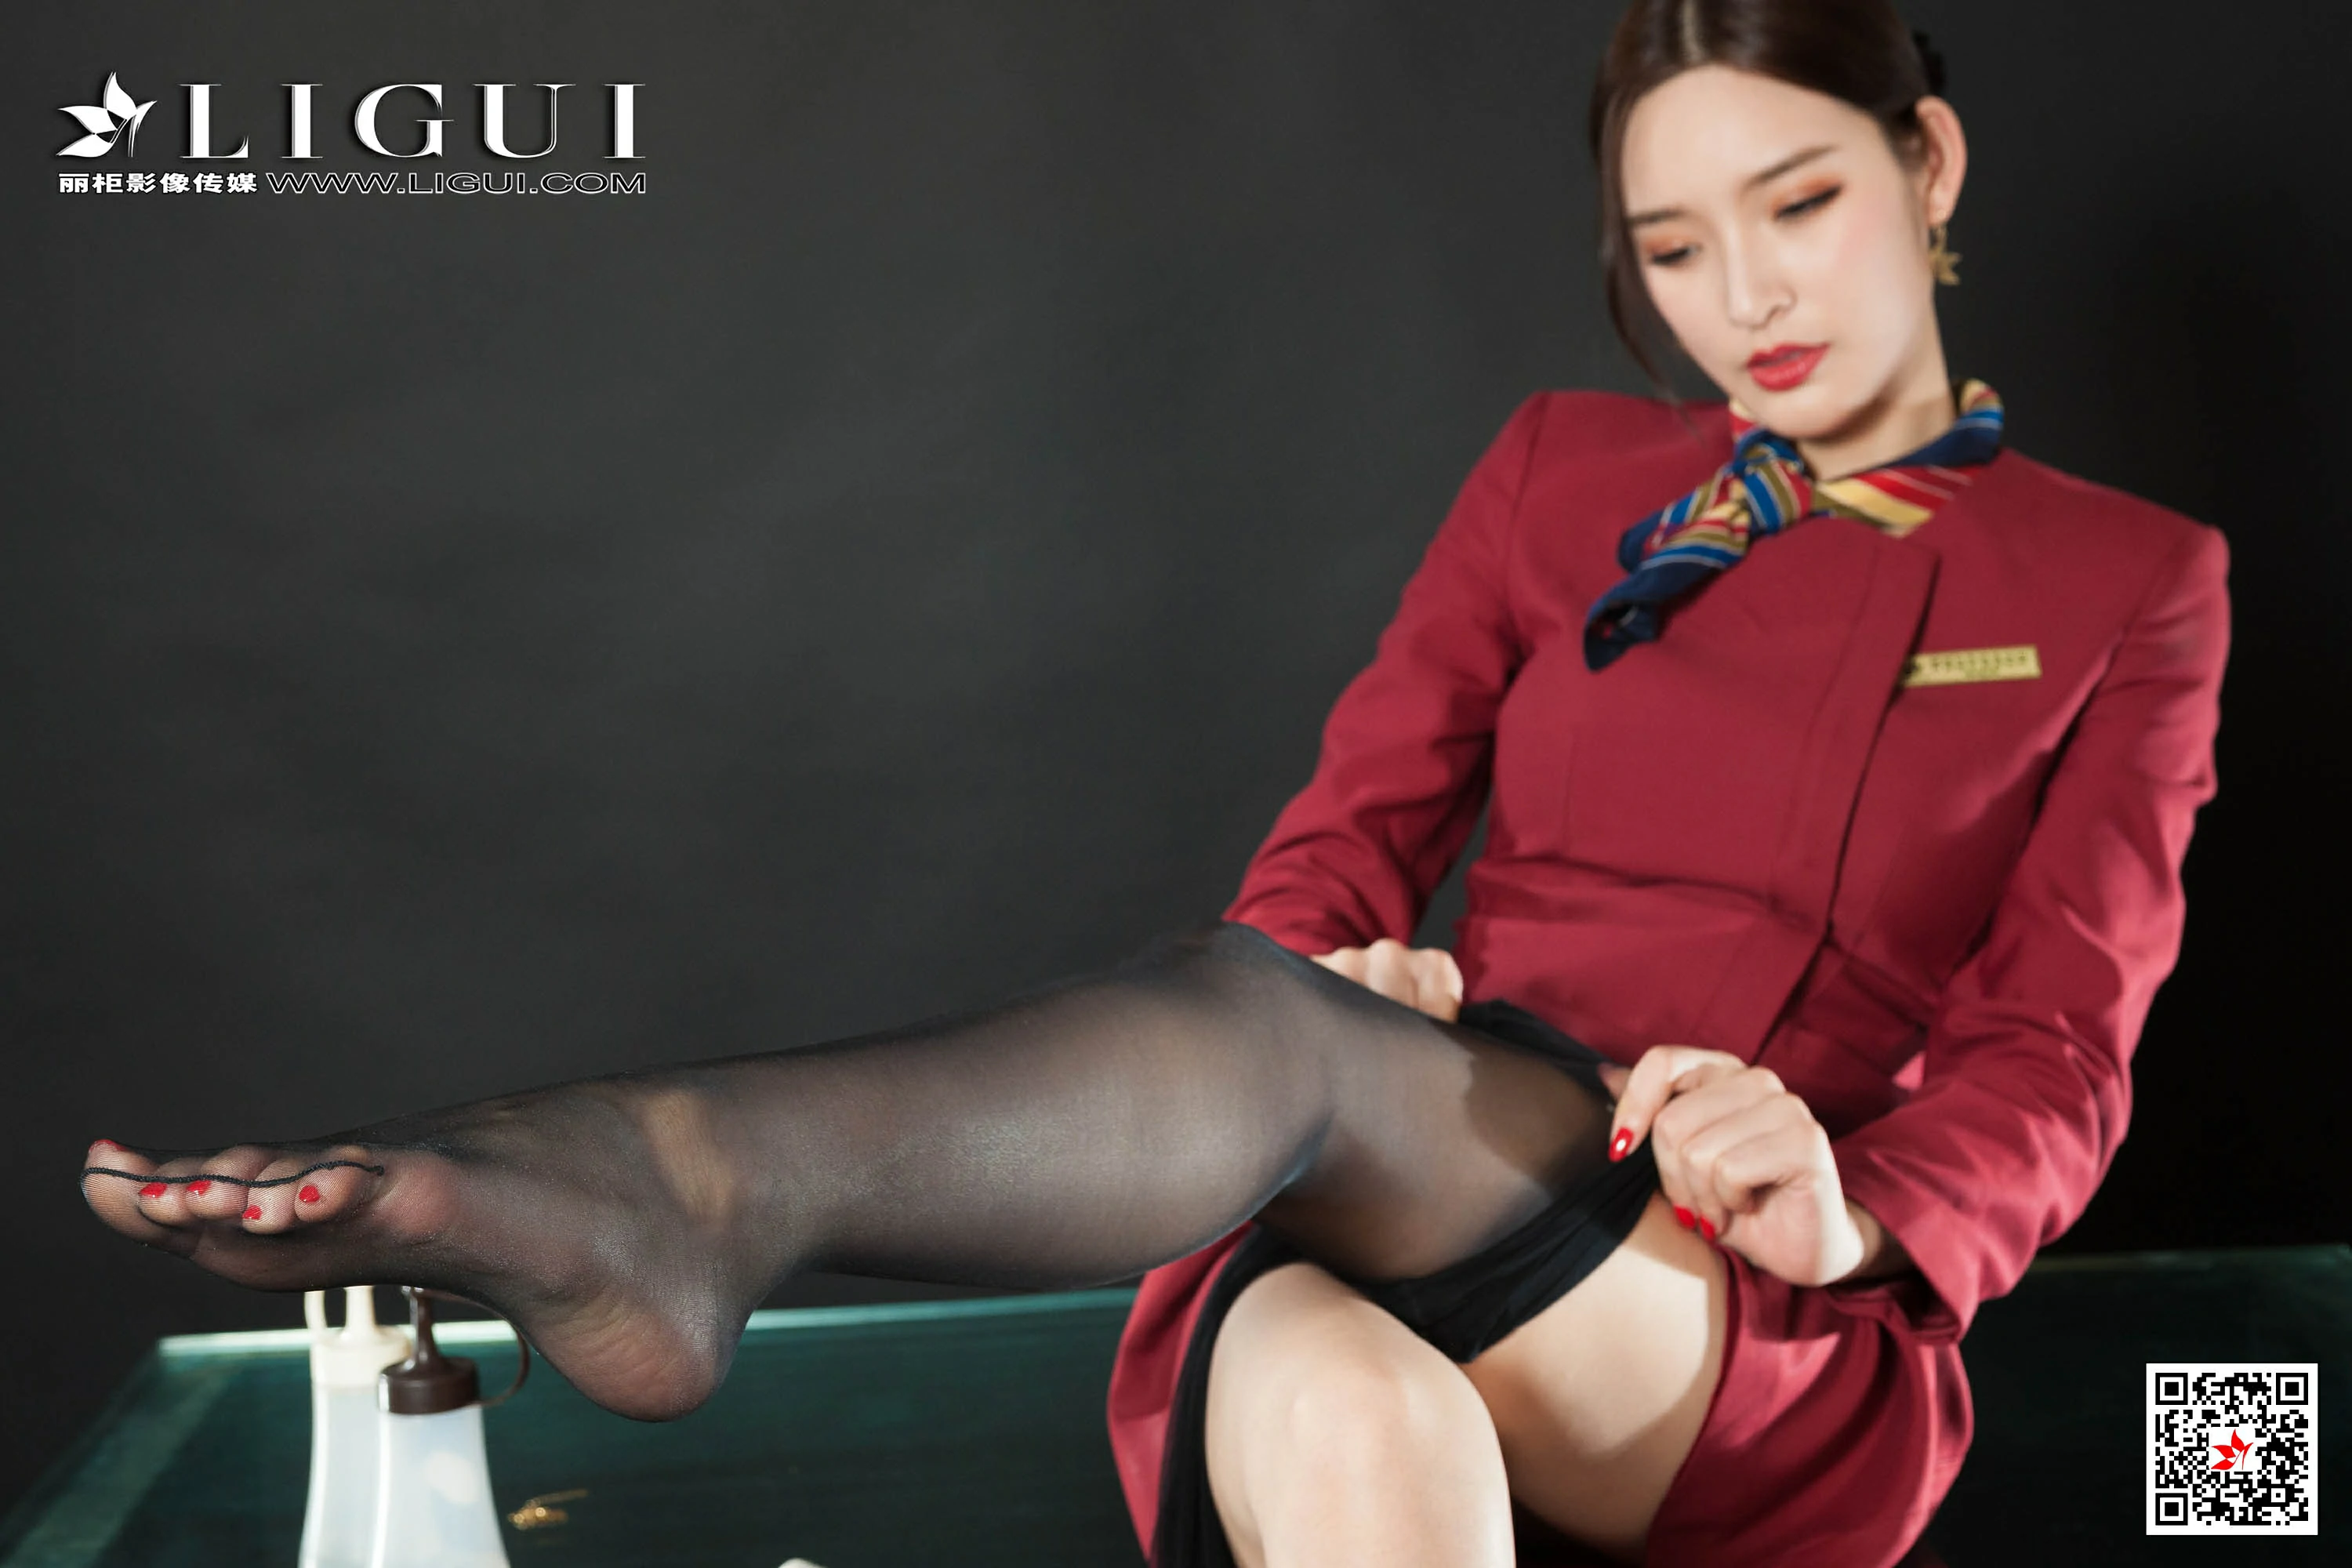 [Ligui丽柜会所]2019-10-09 性感空姐 雪糕 红色制服与短裙加黑色丝袜美腿私房写真集,